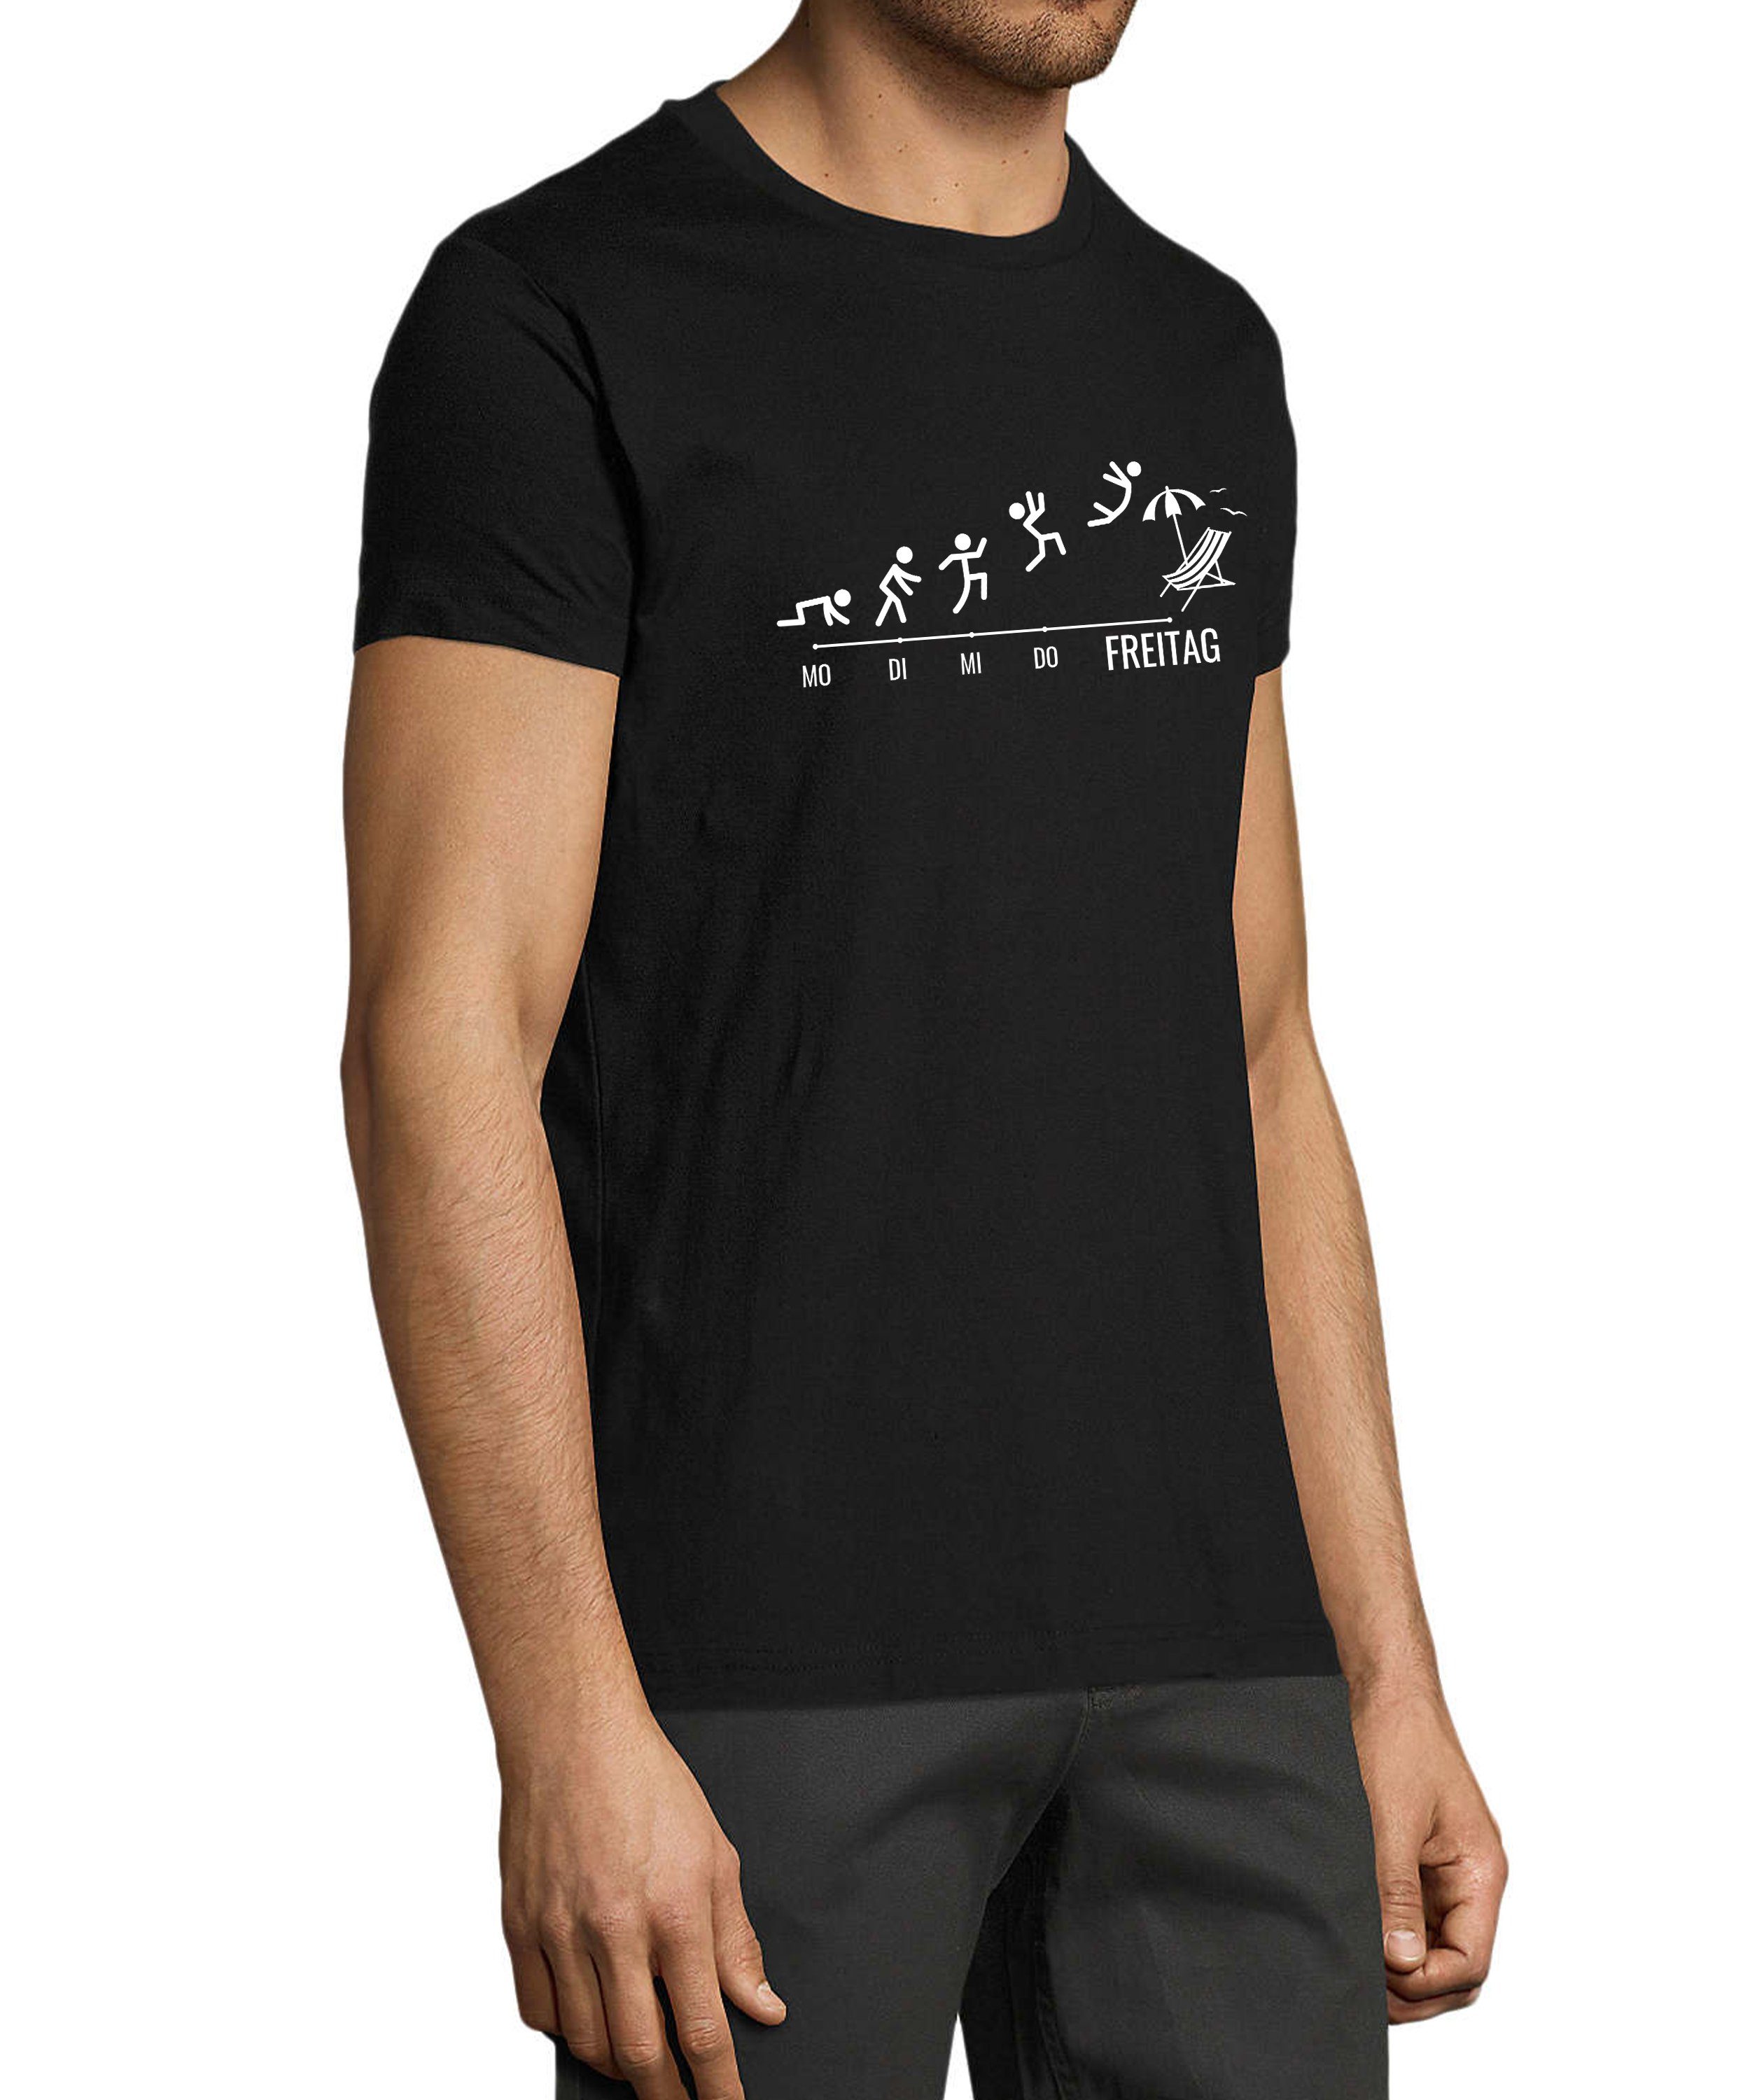 MyDesign24 T-Shirt Herren Fun Print mit schwarz Fit, Shirt Strichmännchen mit Regular Wochentage Aufdruck - Baumwollshirt i309